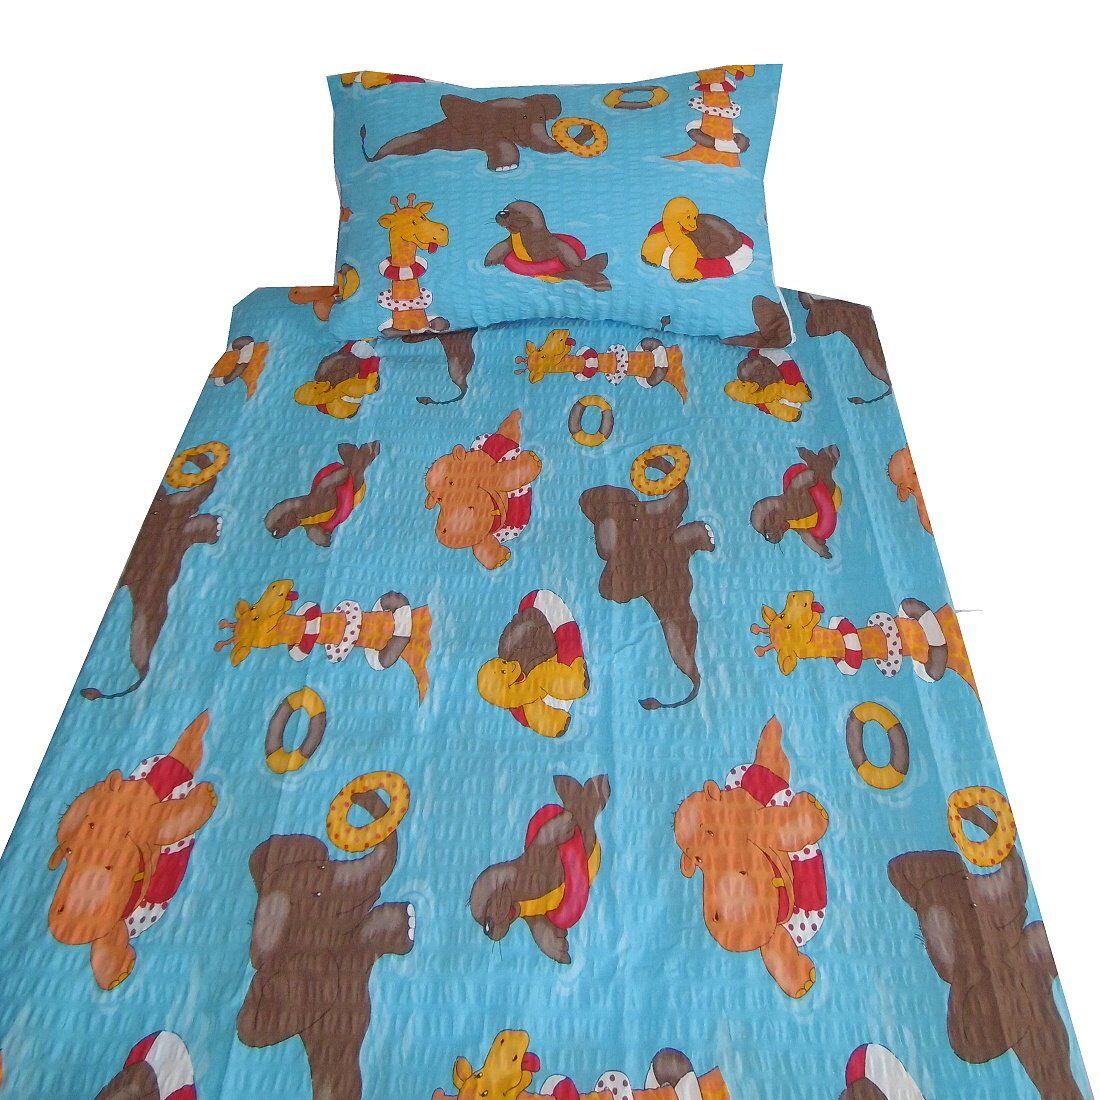 So zvieratkami kvalitné detské krepové posteľné obliečky do postieľky Kúpalisko modrej, Dadka